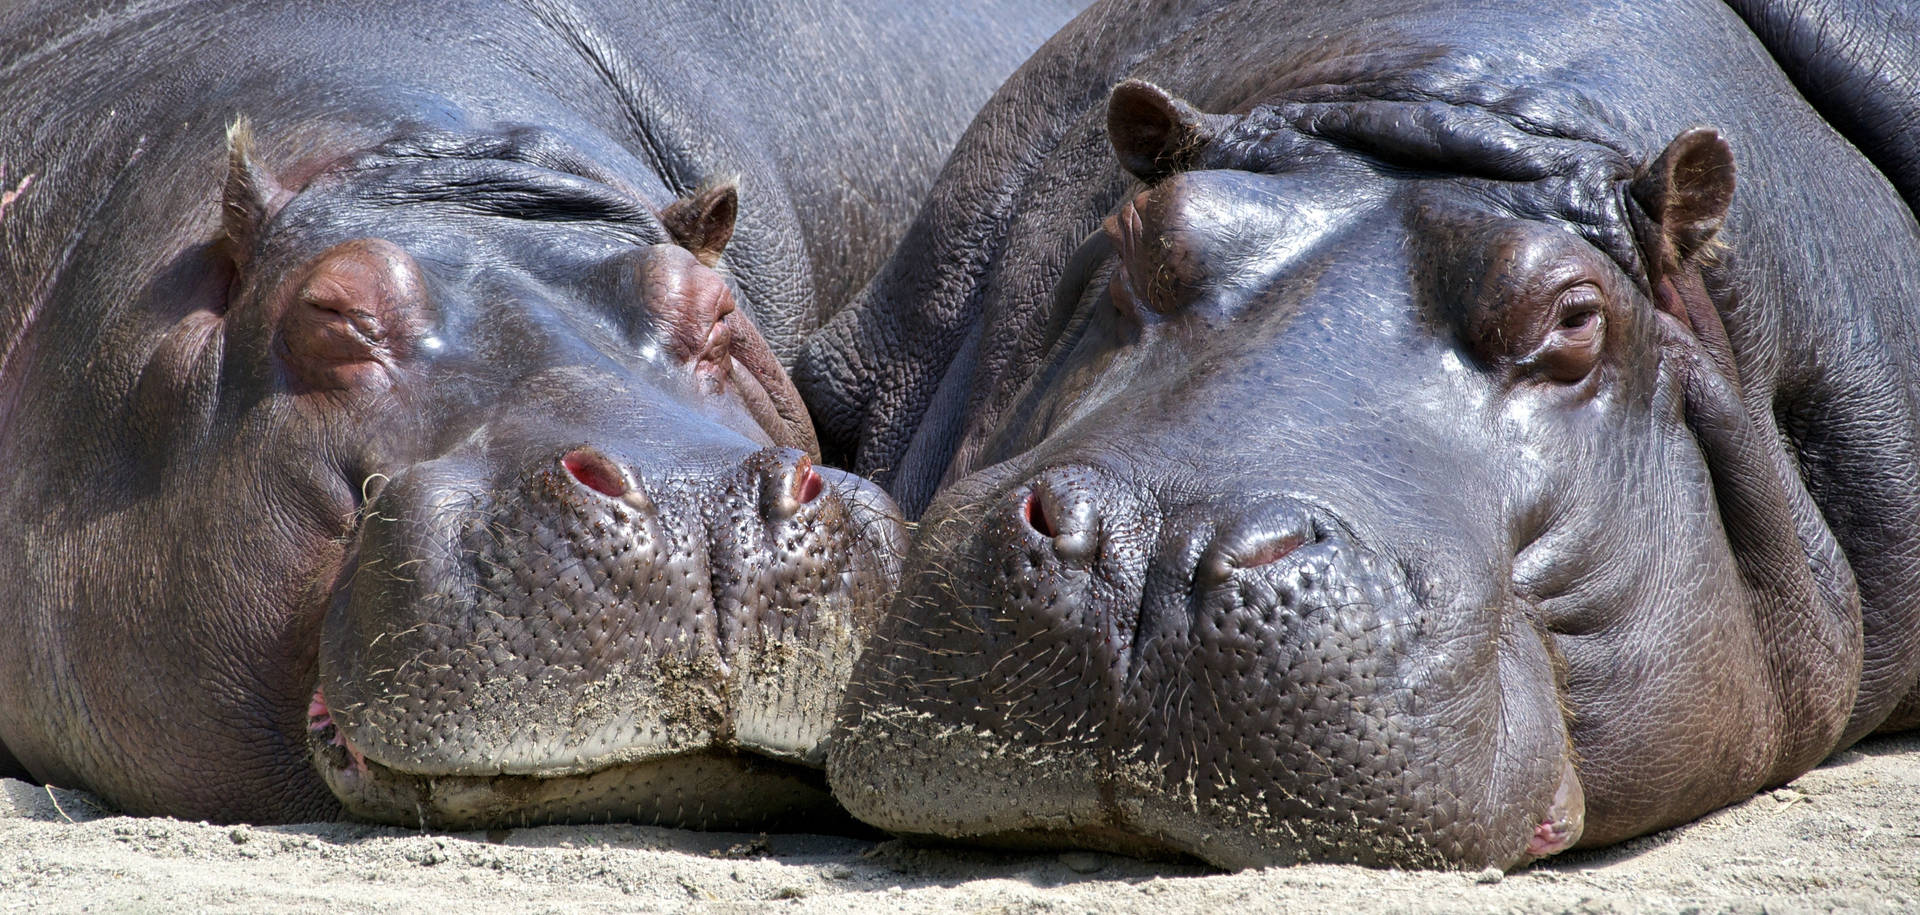 Two Sleepy Hippopotamuses